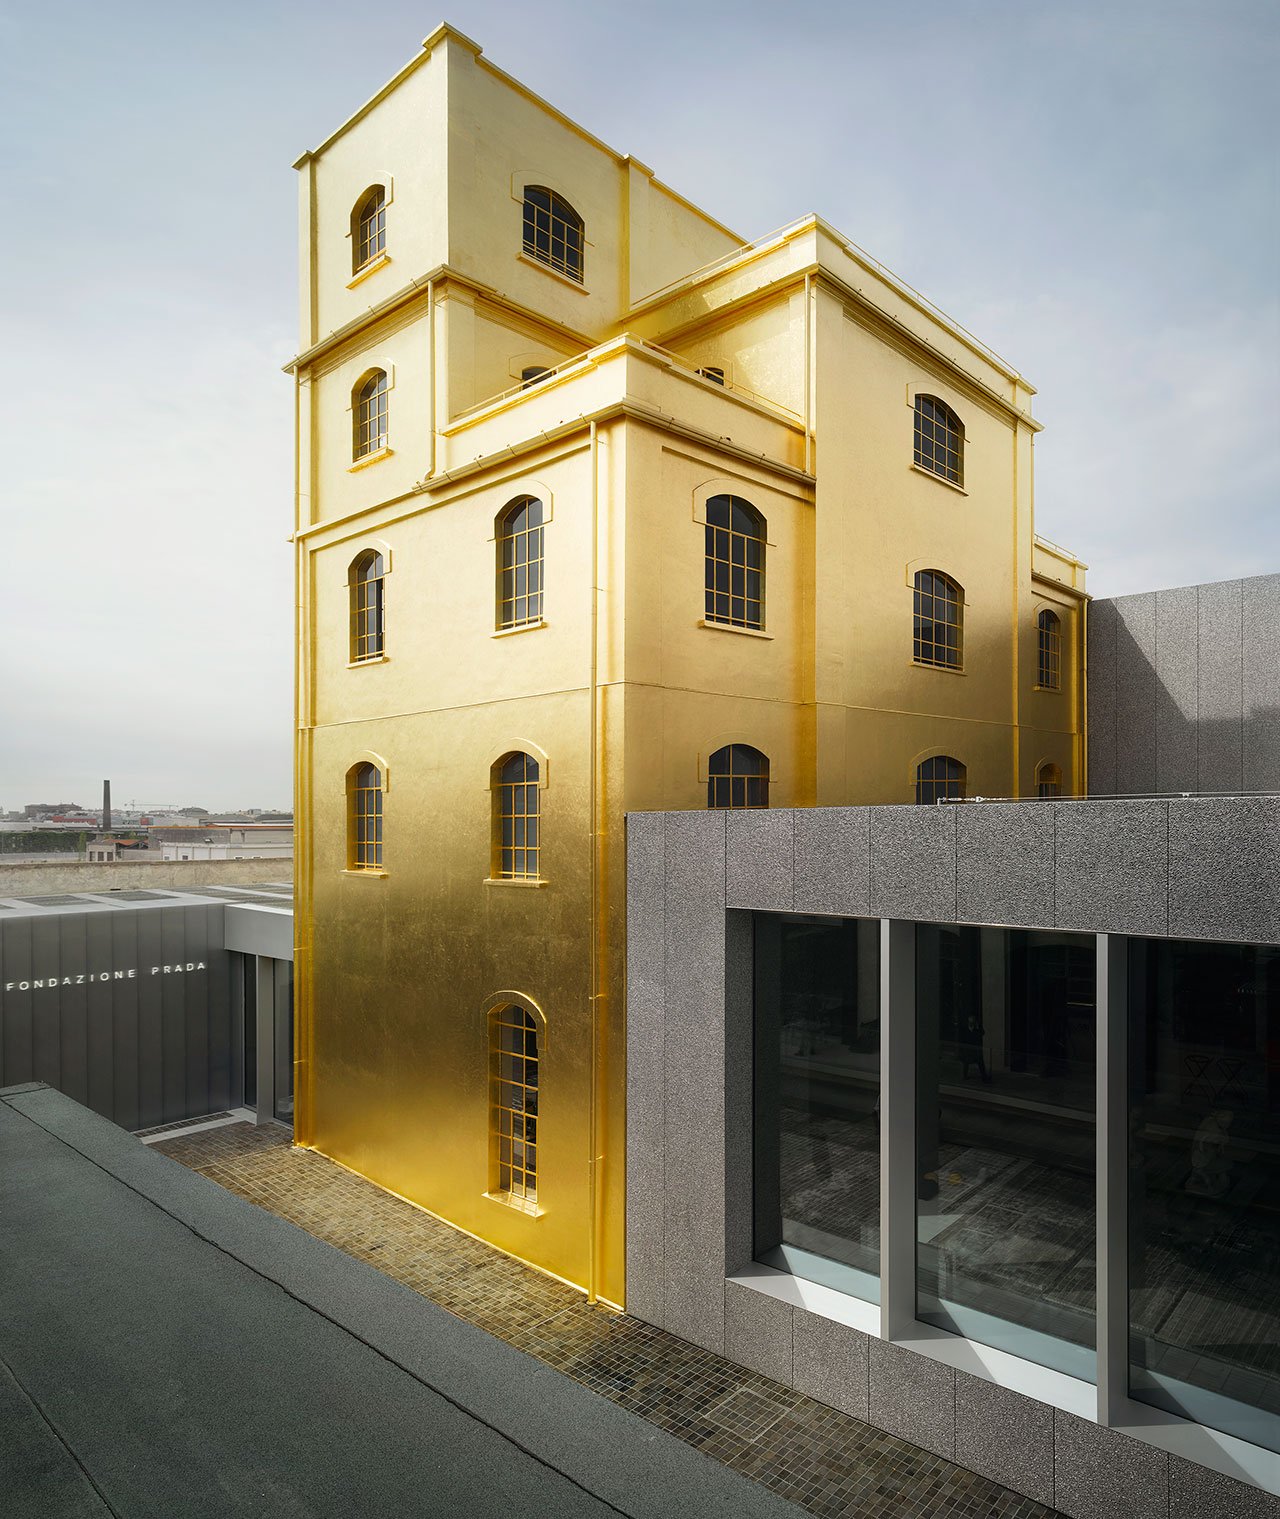 New Milan venue of Fondazione PradaArchitectural project by OMAPhoto: Bas Princen2015Courtesy Fondazione Prada.